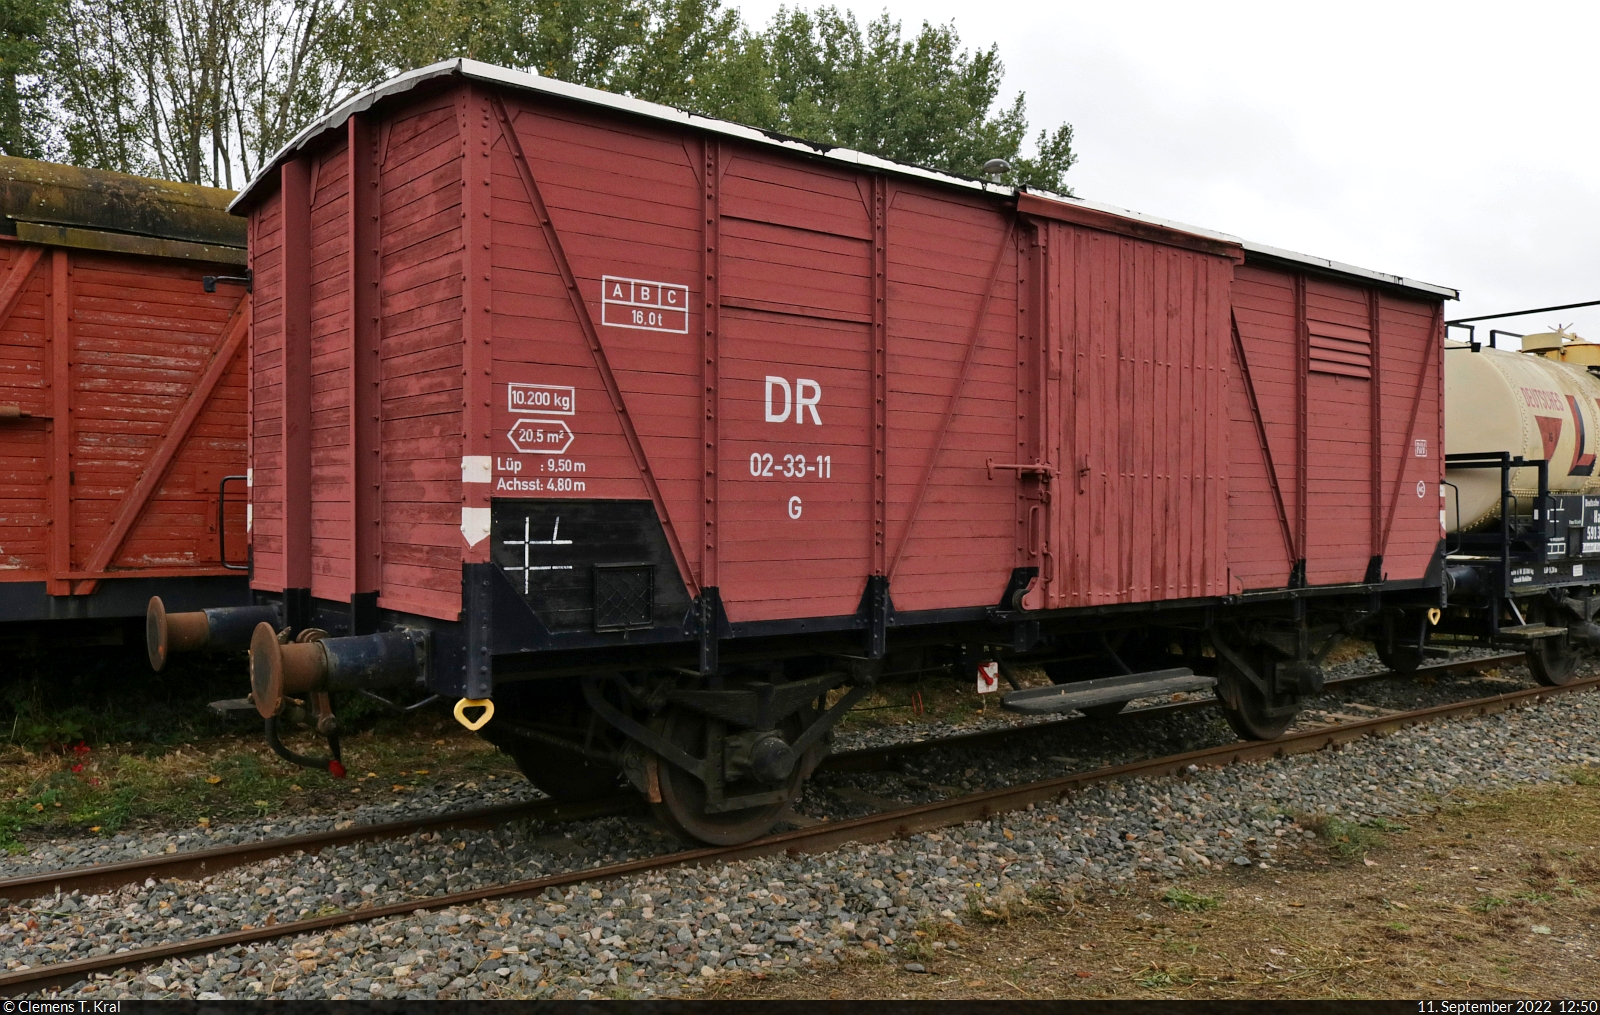 Gedeckter Güterwagen mit der Bezeichnung  G  (DR 02-33-11) beim 32. Verkehrshistorischen Wochenende am Lokschuppen Aschersleben.

🧰 Eisenbahnclub Aschersleben e.V. (ECA)
🕓 11.9.2022 | 12:50 Uhr